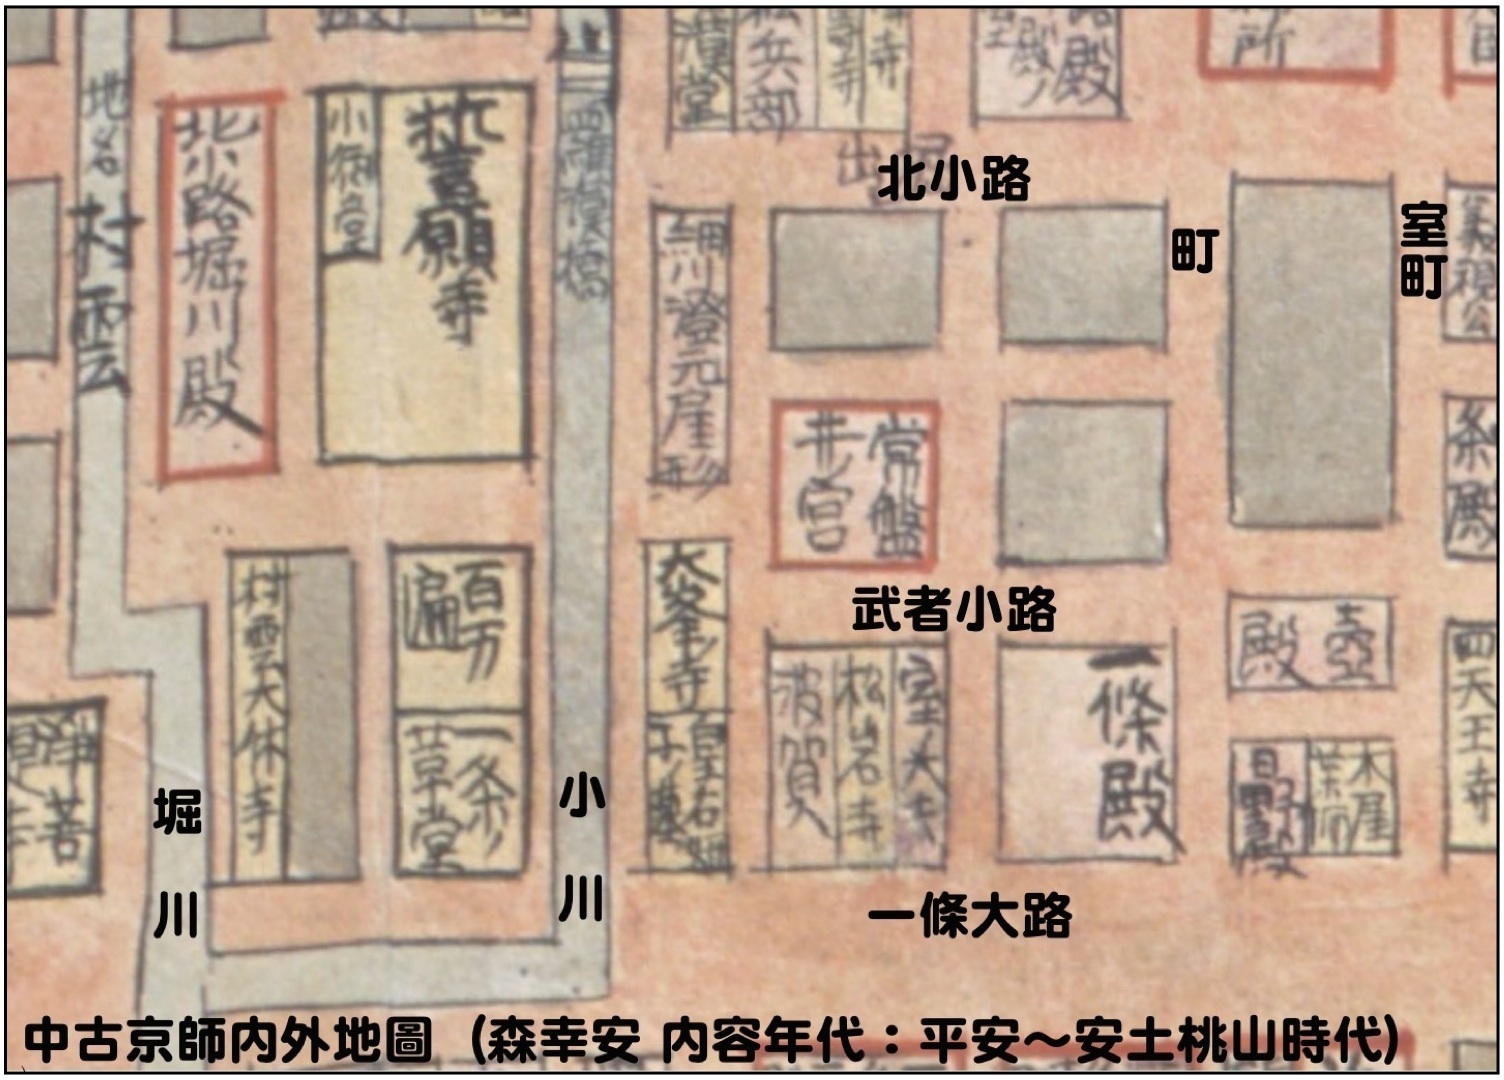 28:中古京師内外地圖